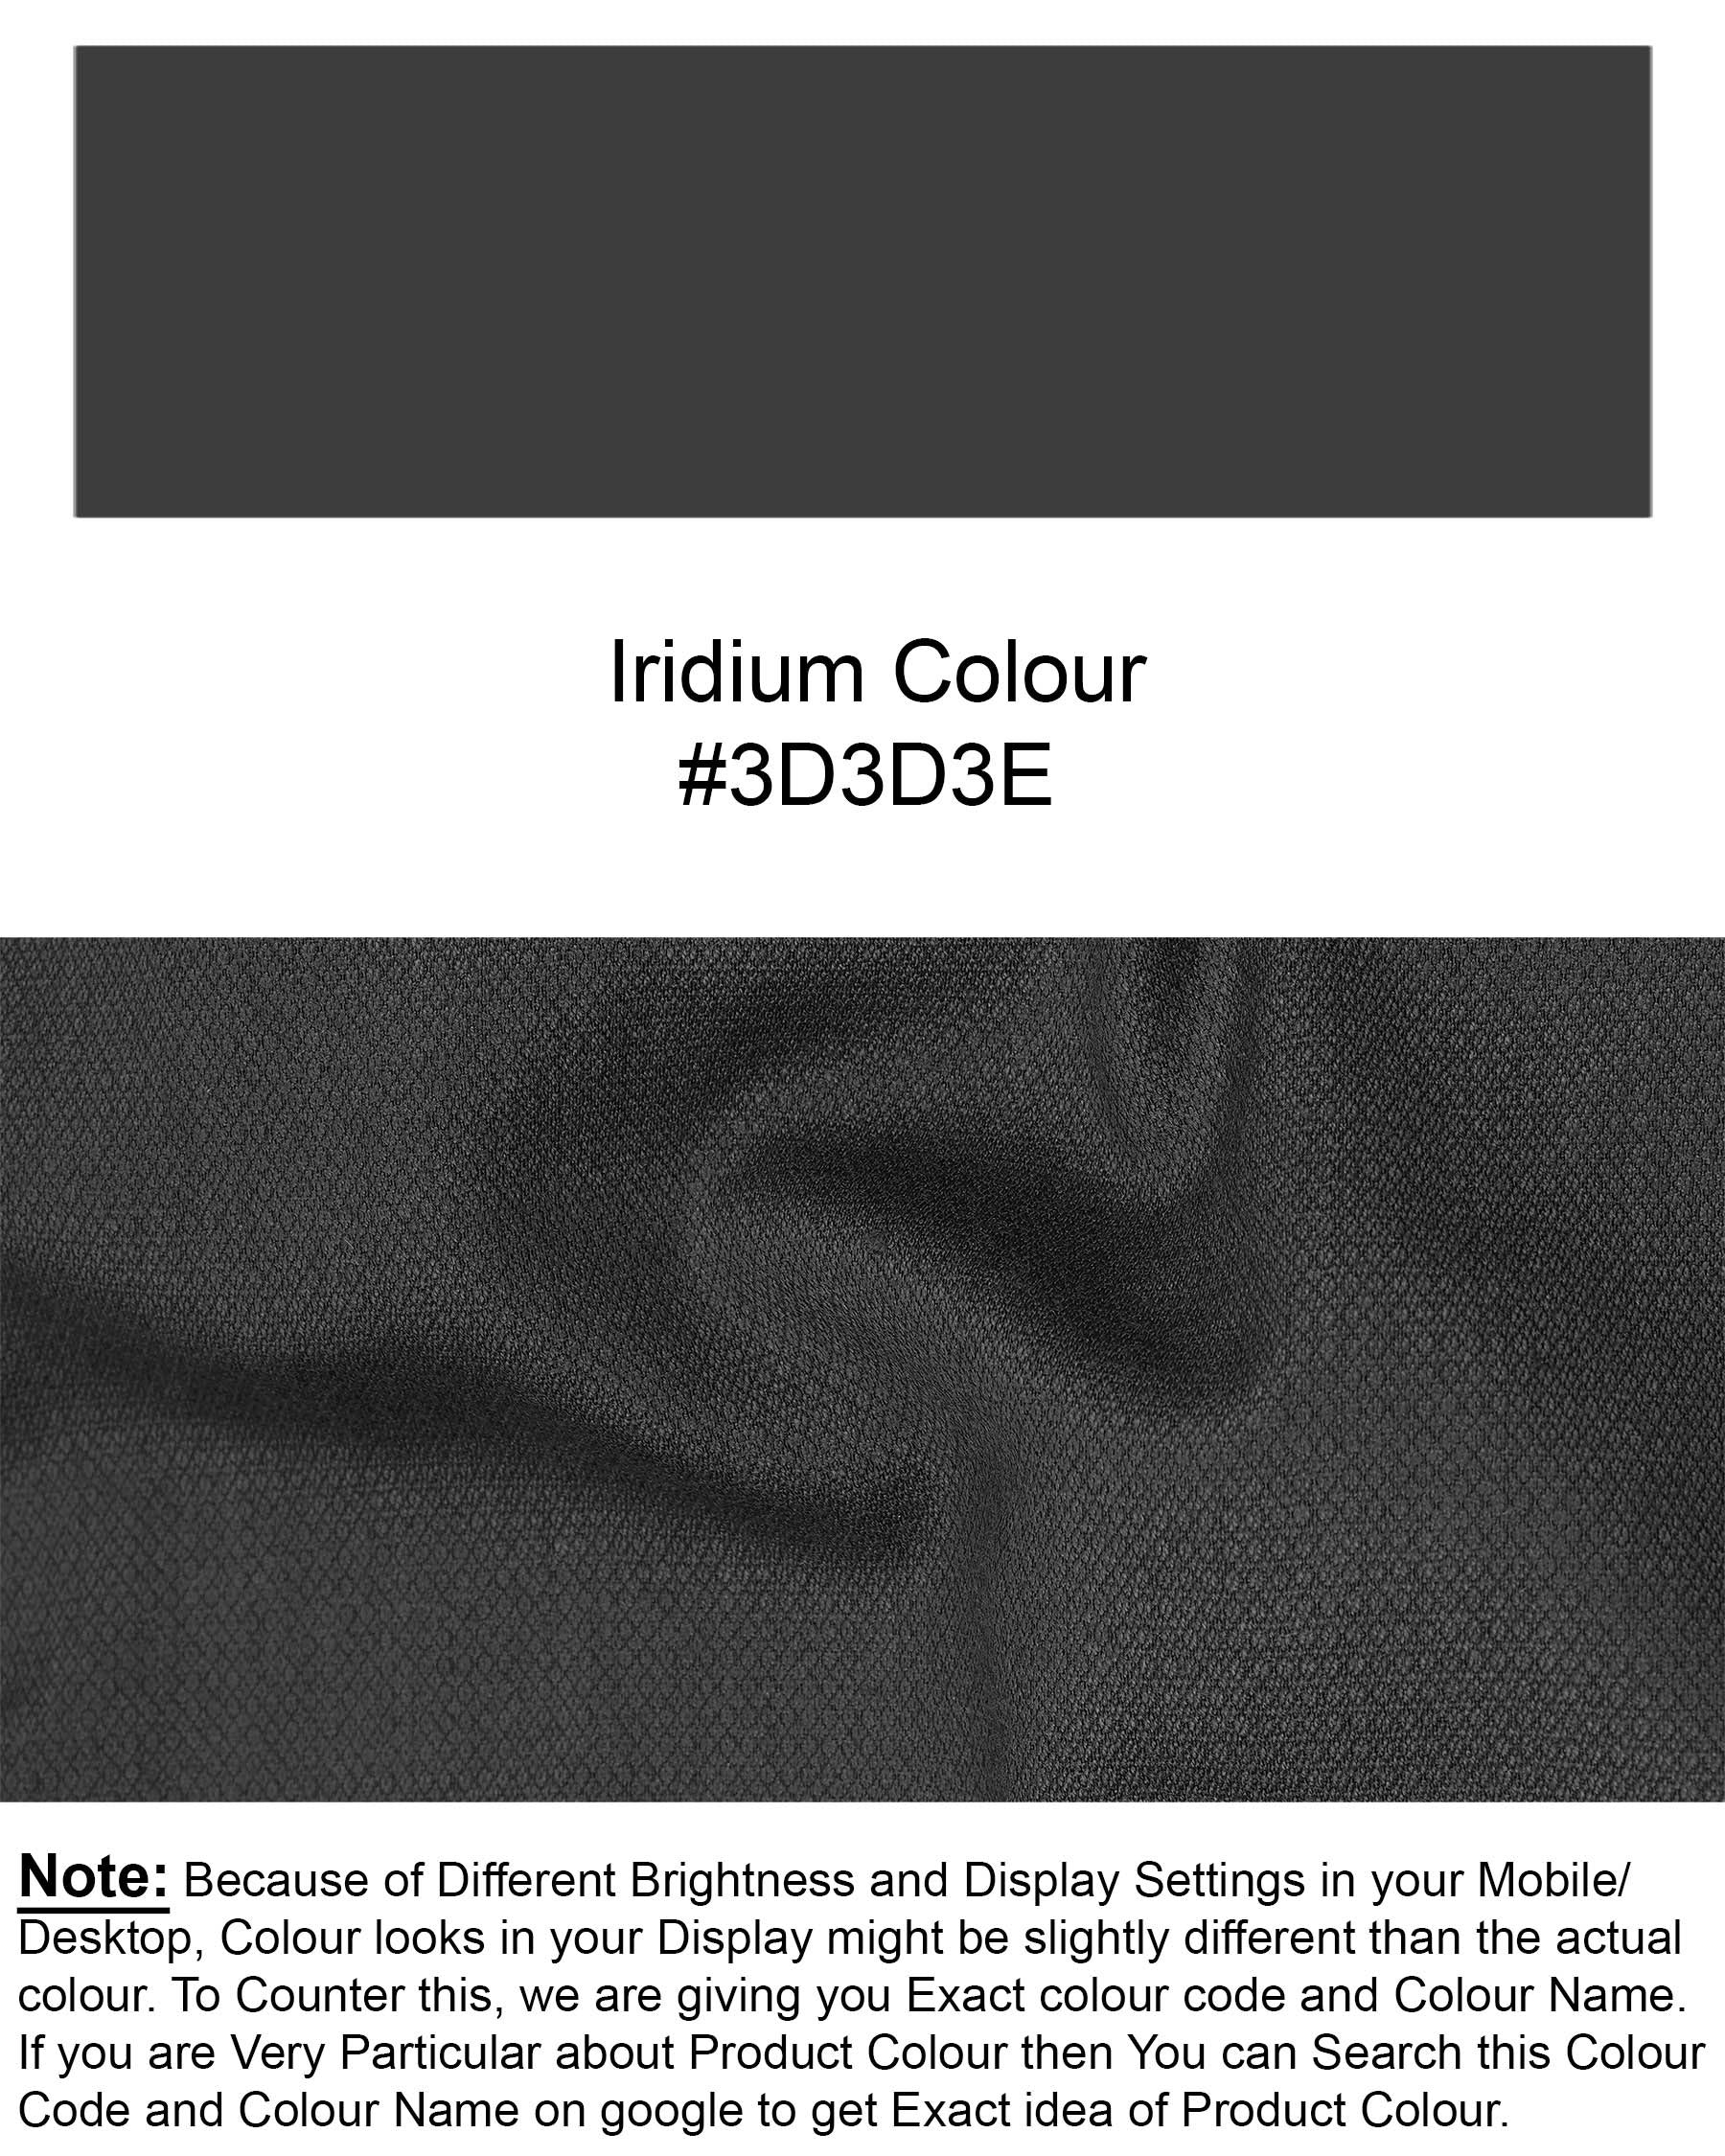 Iridium Gray Textured Pant T1964-28, T1964-30, T1964-32, T1964-34, T1964-36, T1964-38, T1964-40, T1964-42, T1964-44